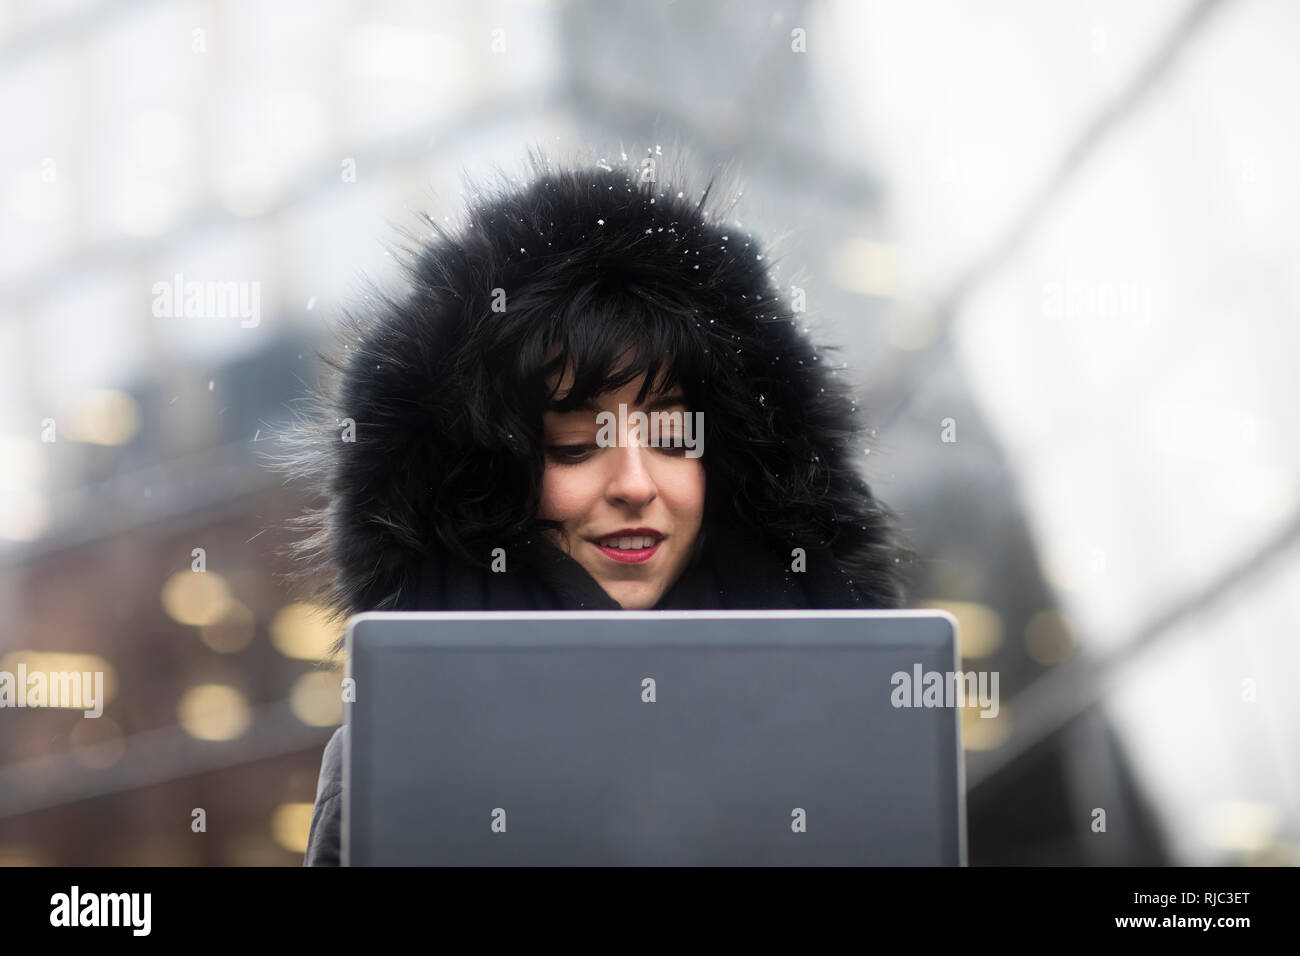 Portrait d'une femme debout devant un bureau à l'aide d'une tablette numérique, Allemagne Banque D'Images